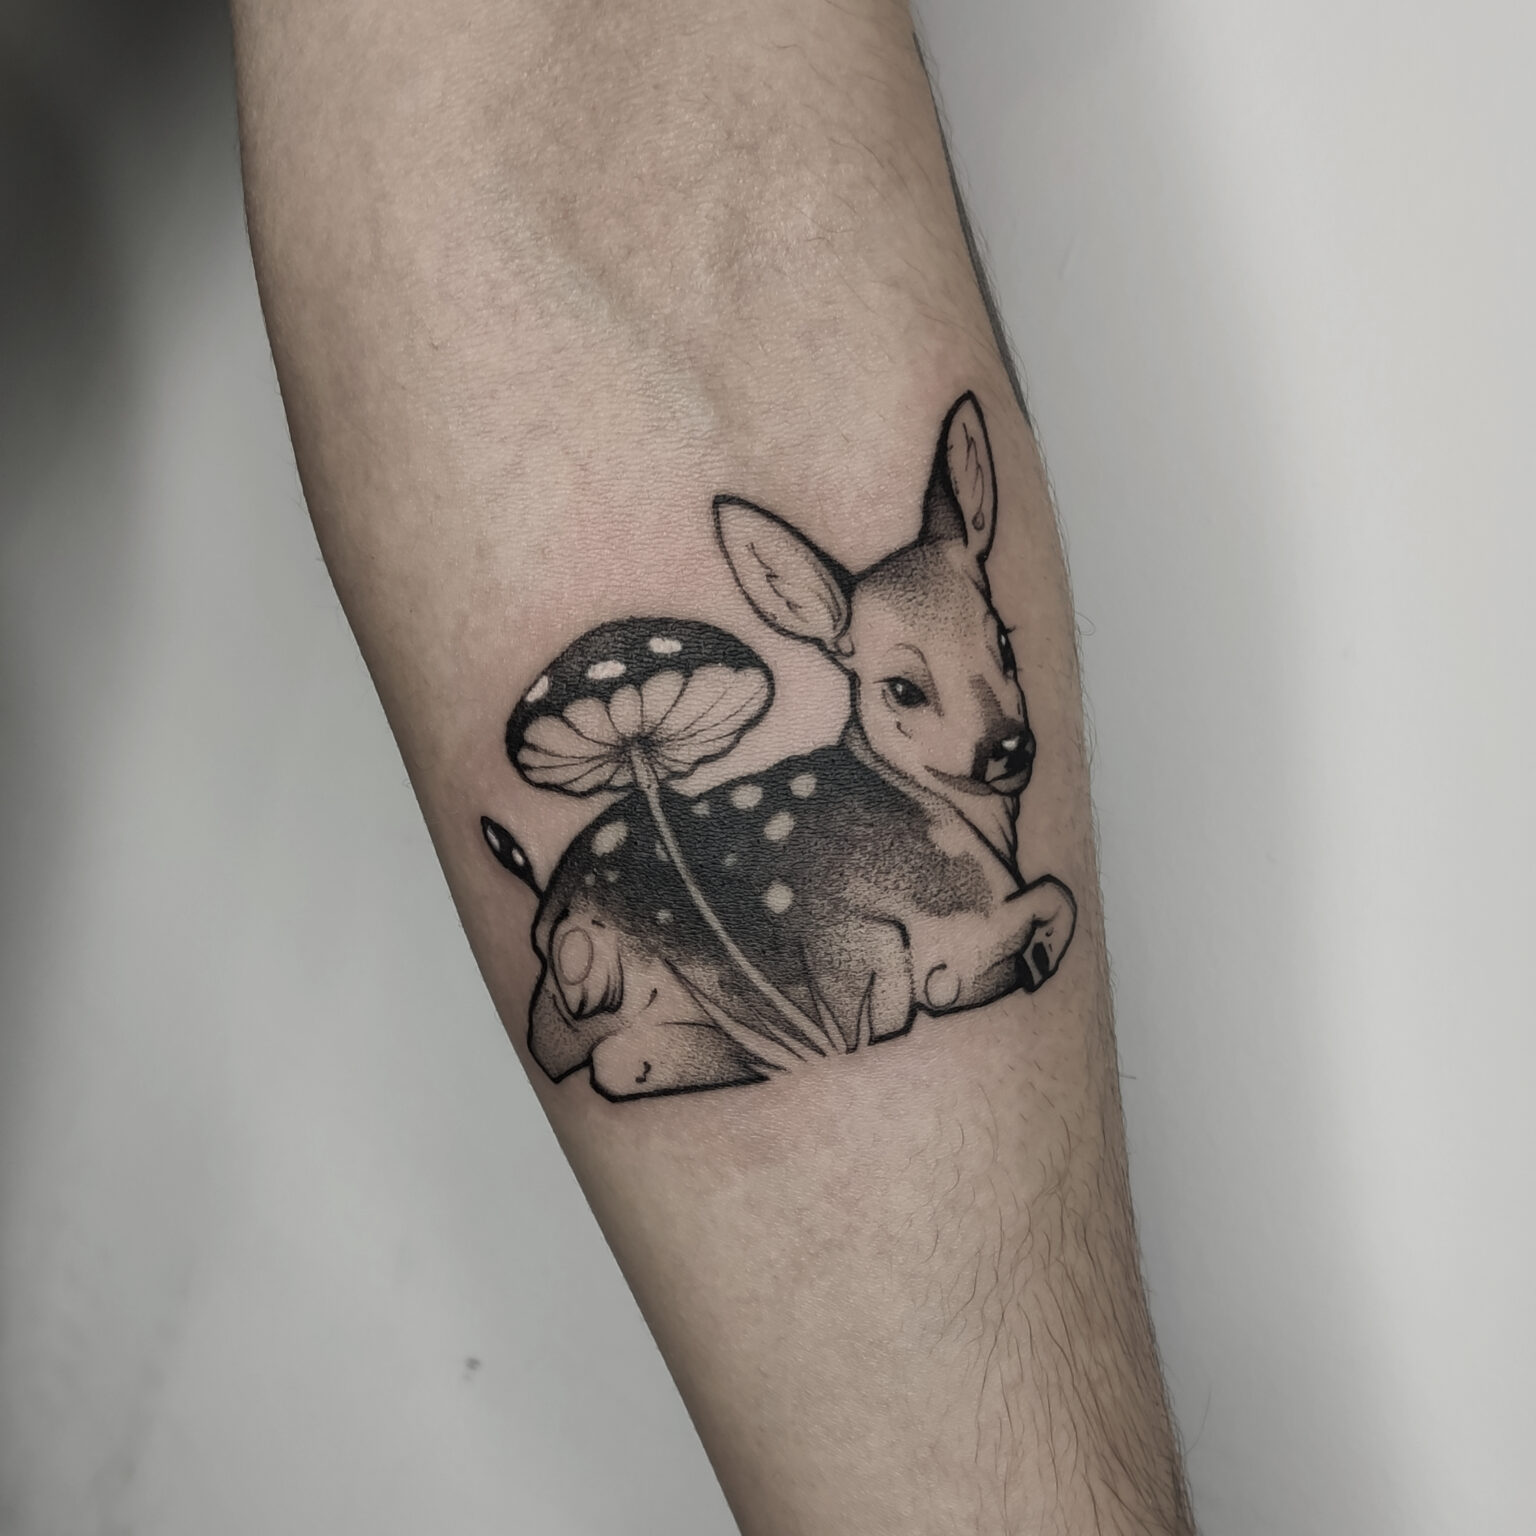 White Rat Tattoo studio tatuażu Warszawa Foxey tatuaż sarna